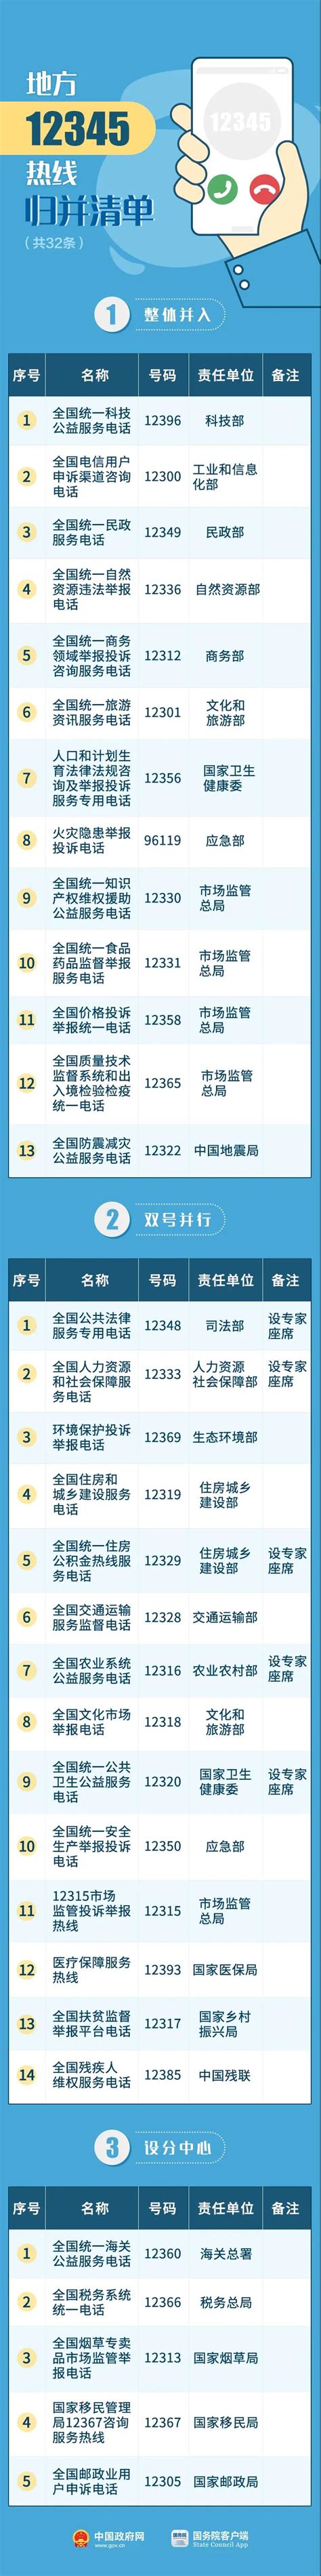 关于芜湖市12345政务服务便民热线归并优化工作的解答_电话